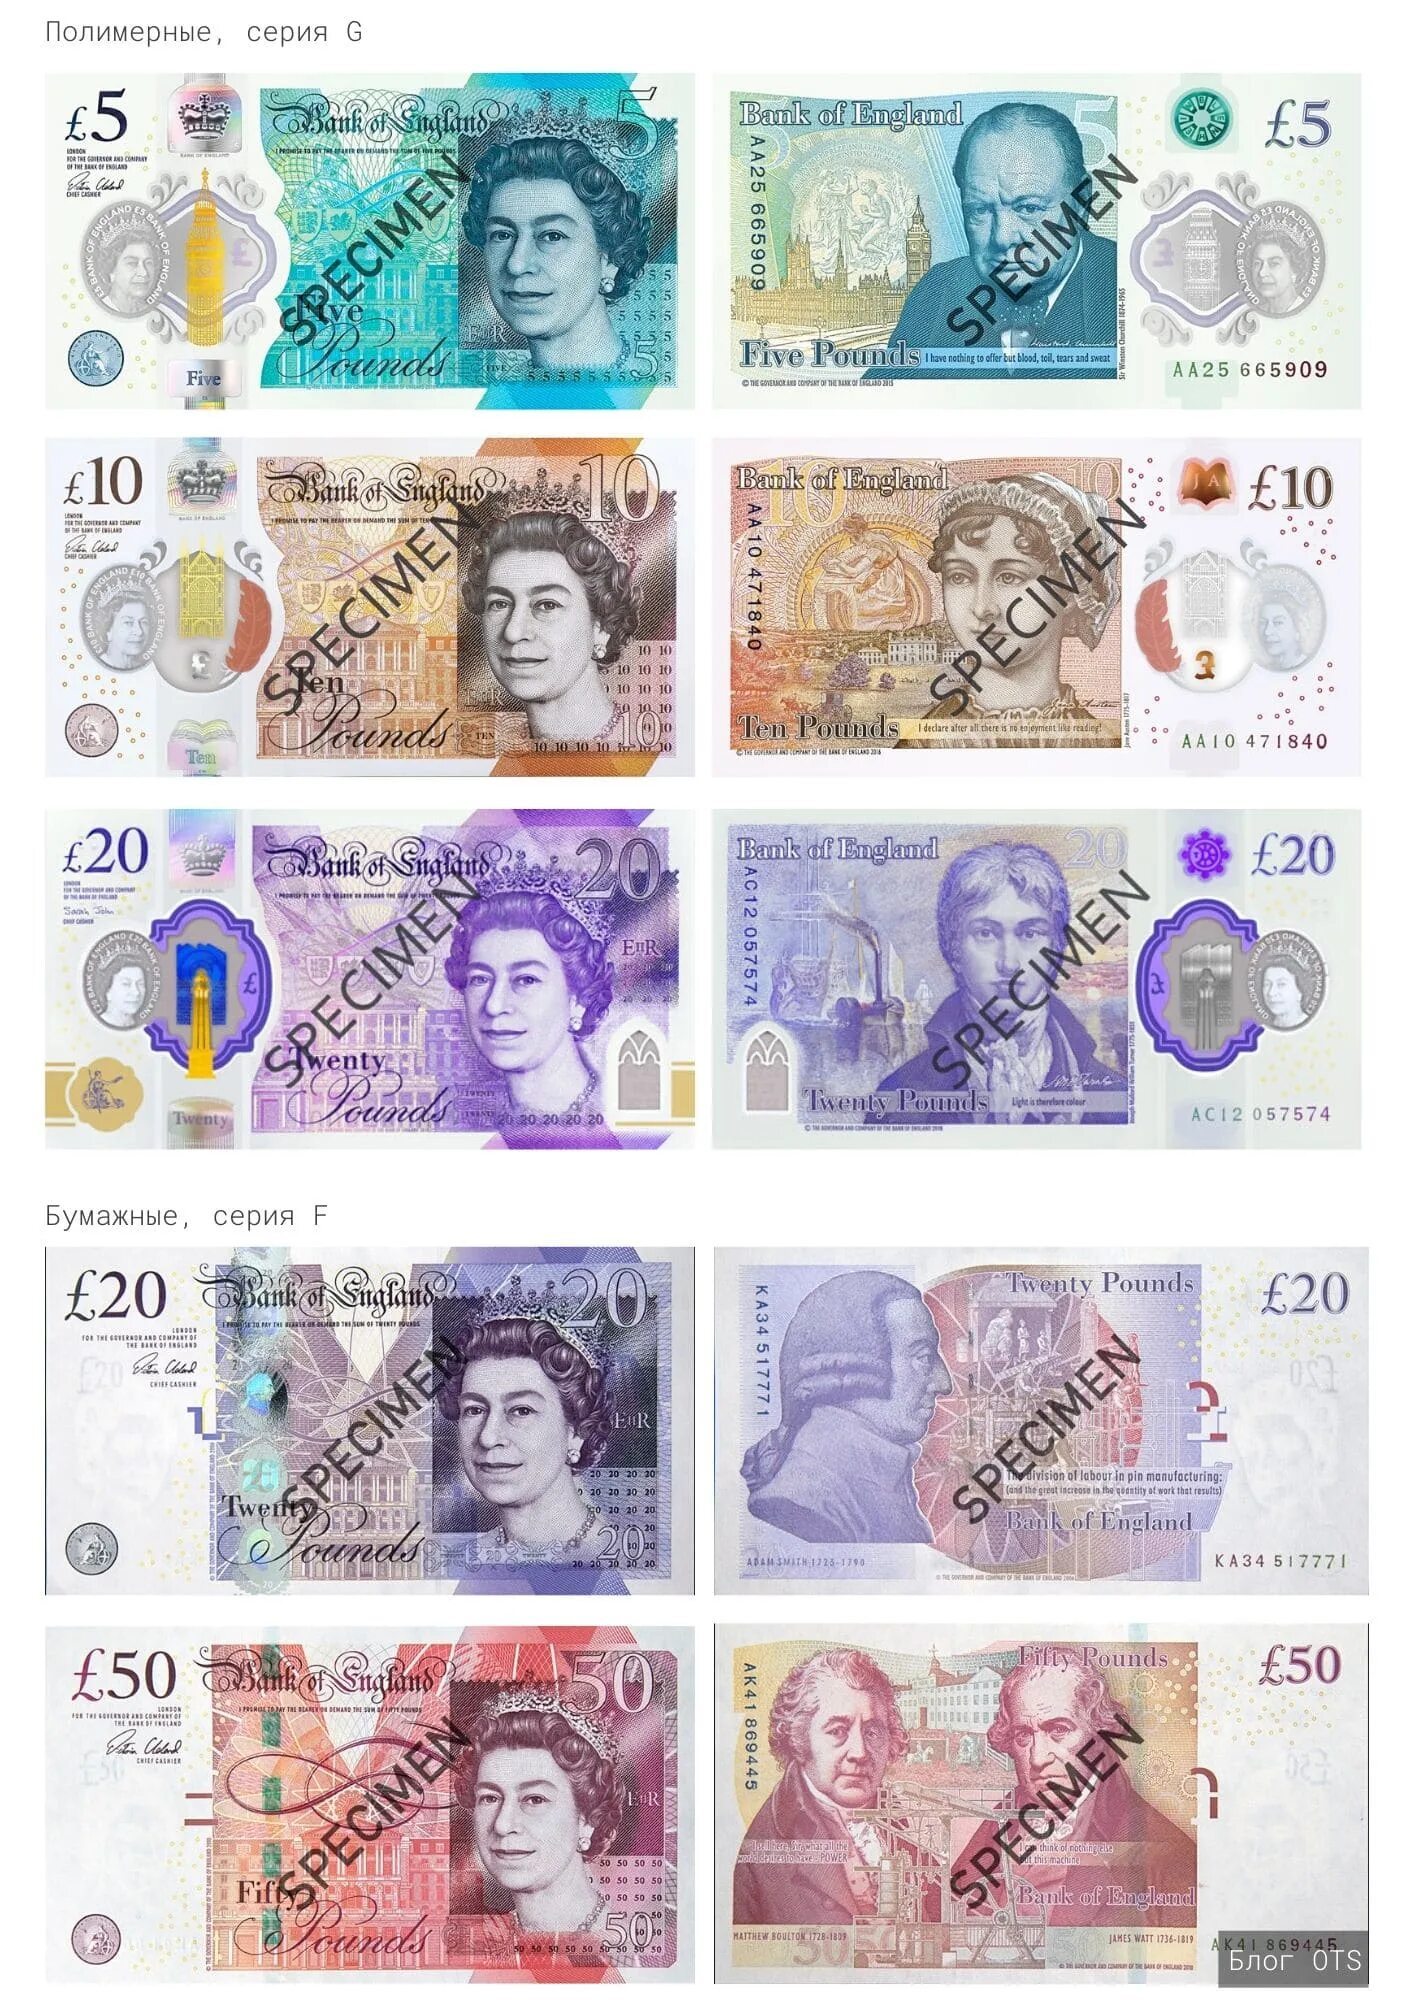 200 стерлингов в рублях. Банкноты фунтов стерлингов Великобритании. Британские банкноты: 1 фунт стерлингов. Валюта Англии 50 фунт стерлингов. 100 Фунтов стерлингов Великобритании.